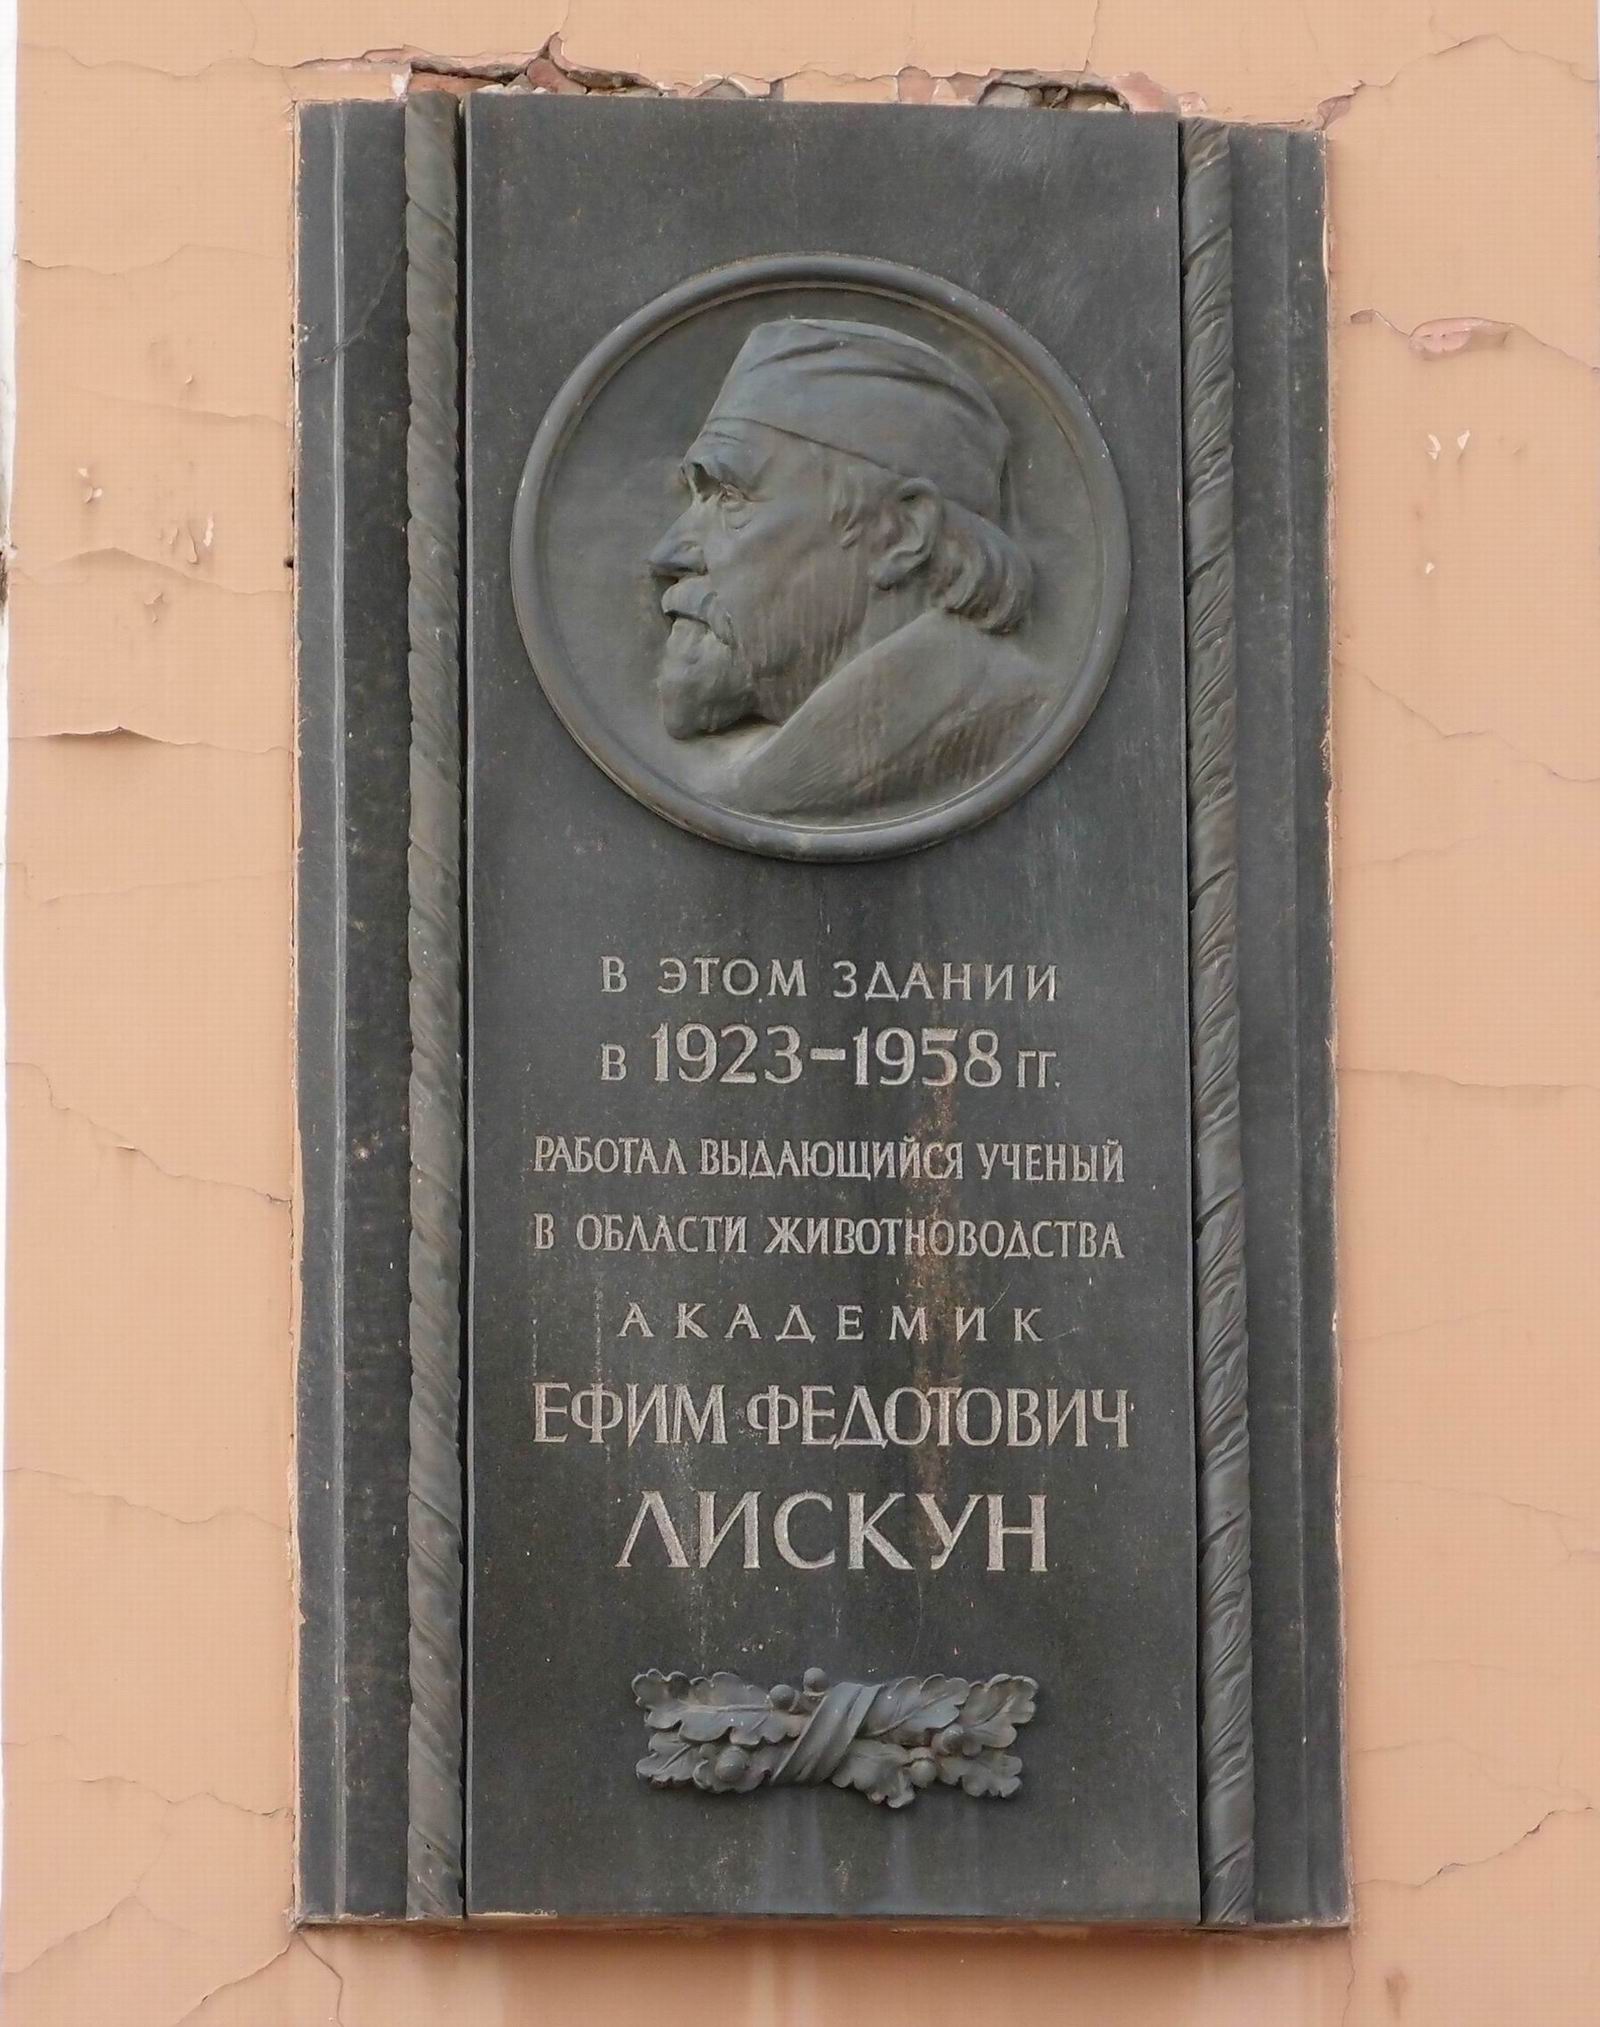 Мемориальная доска Лискуну Е.Ф. (1873–1958), на Тимирязевской улице, дом 54, открыта в 1959.